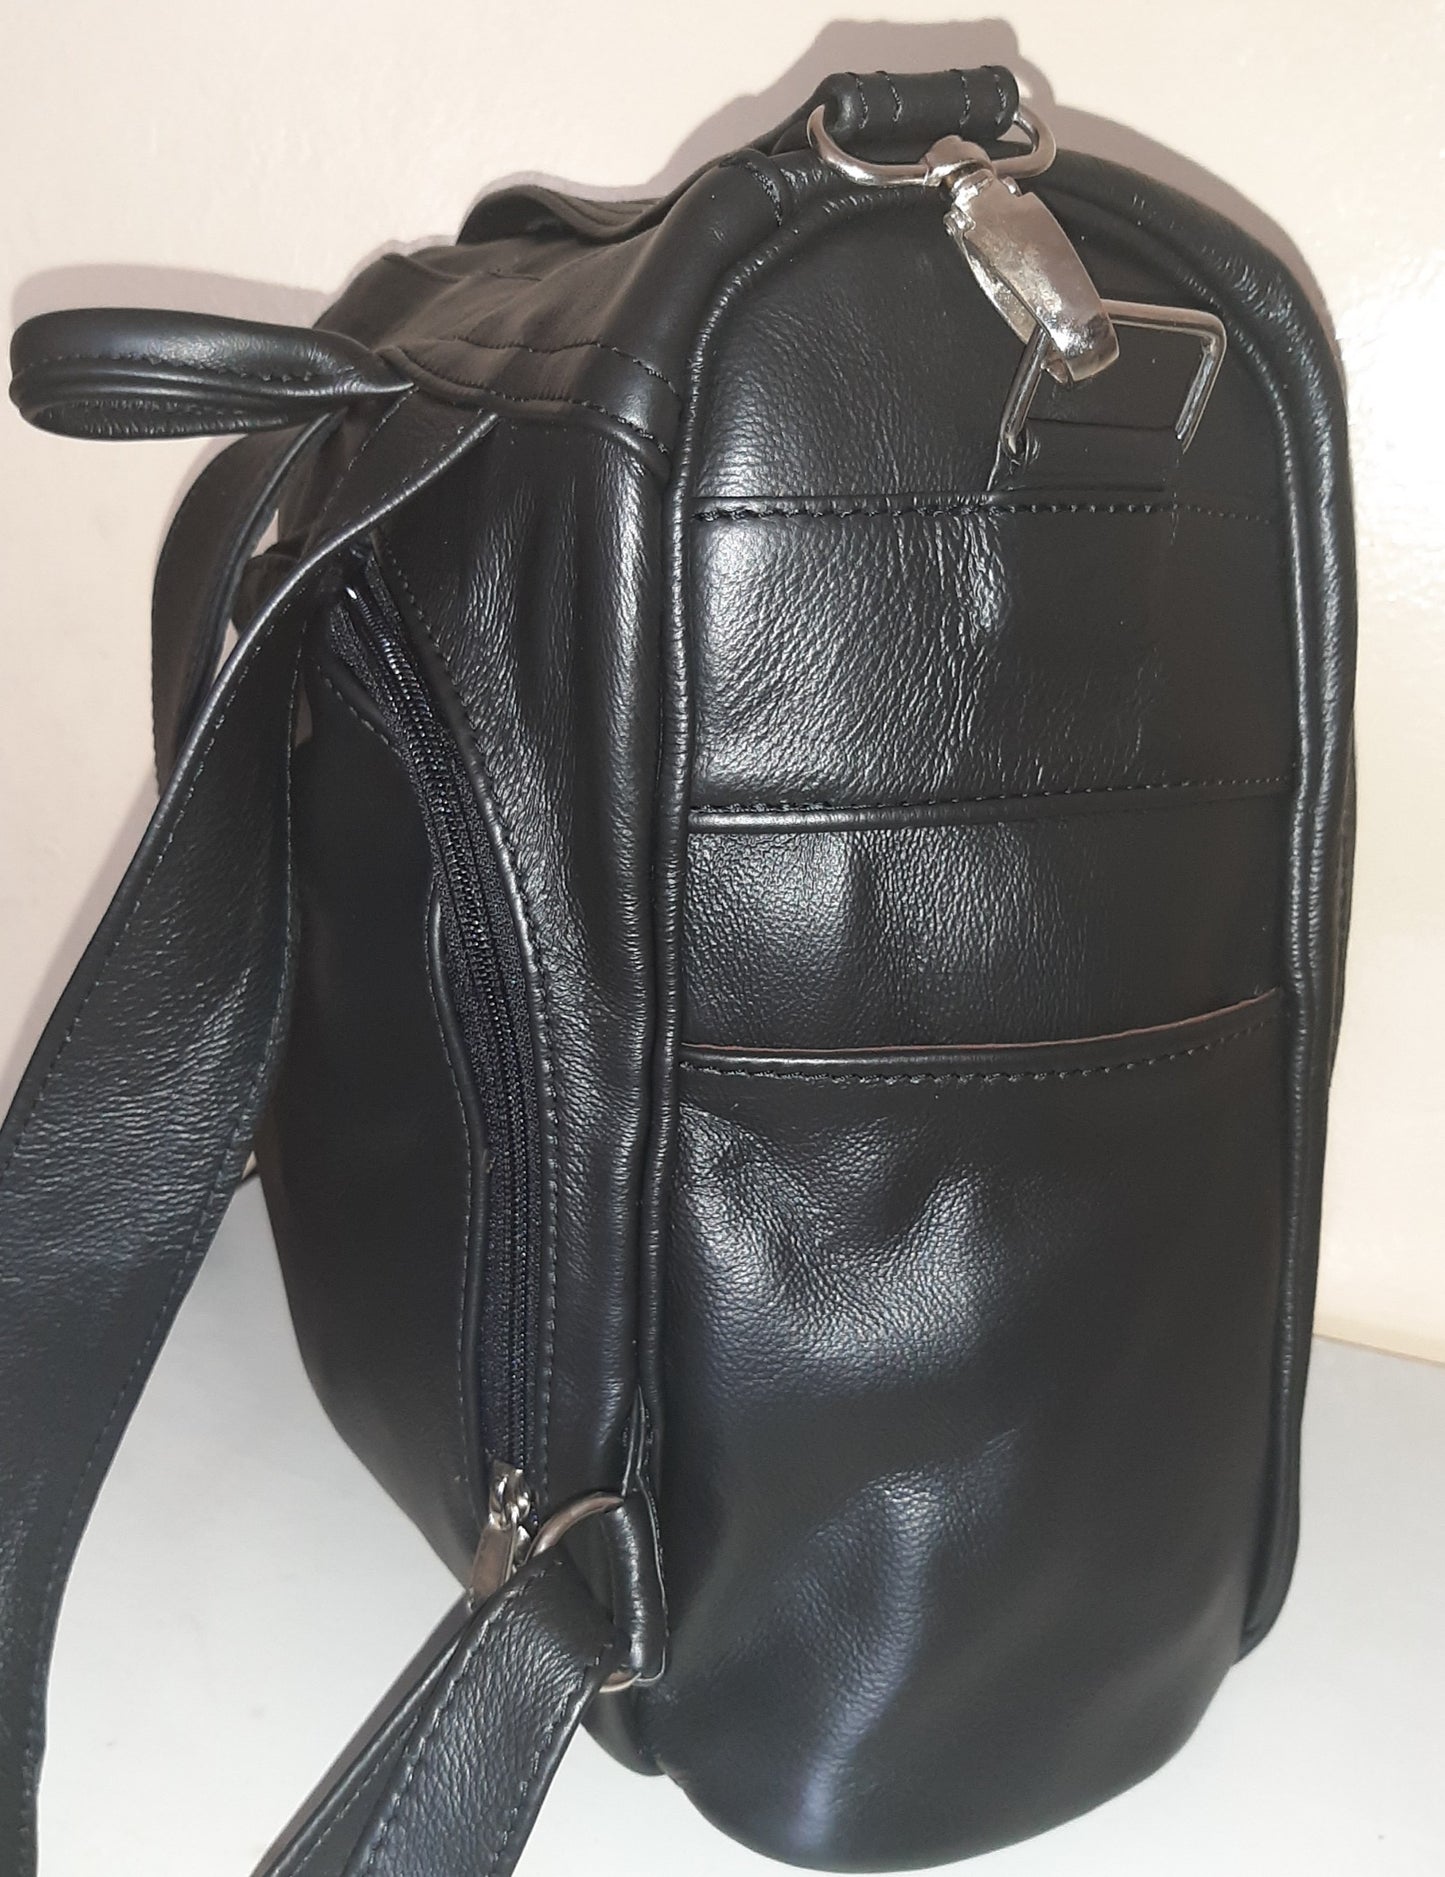 Jabu's travel leather Backpacks